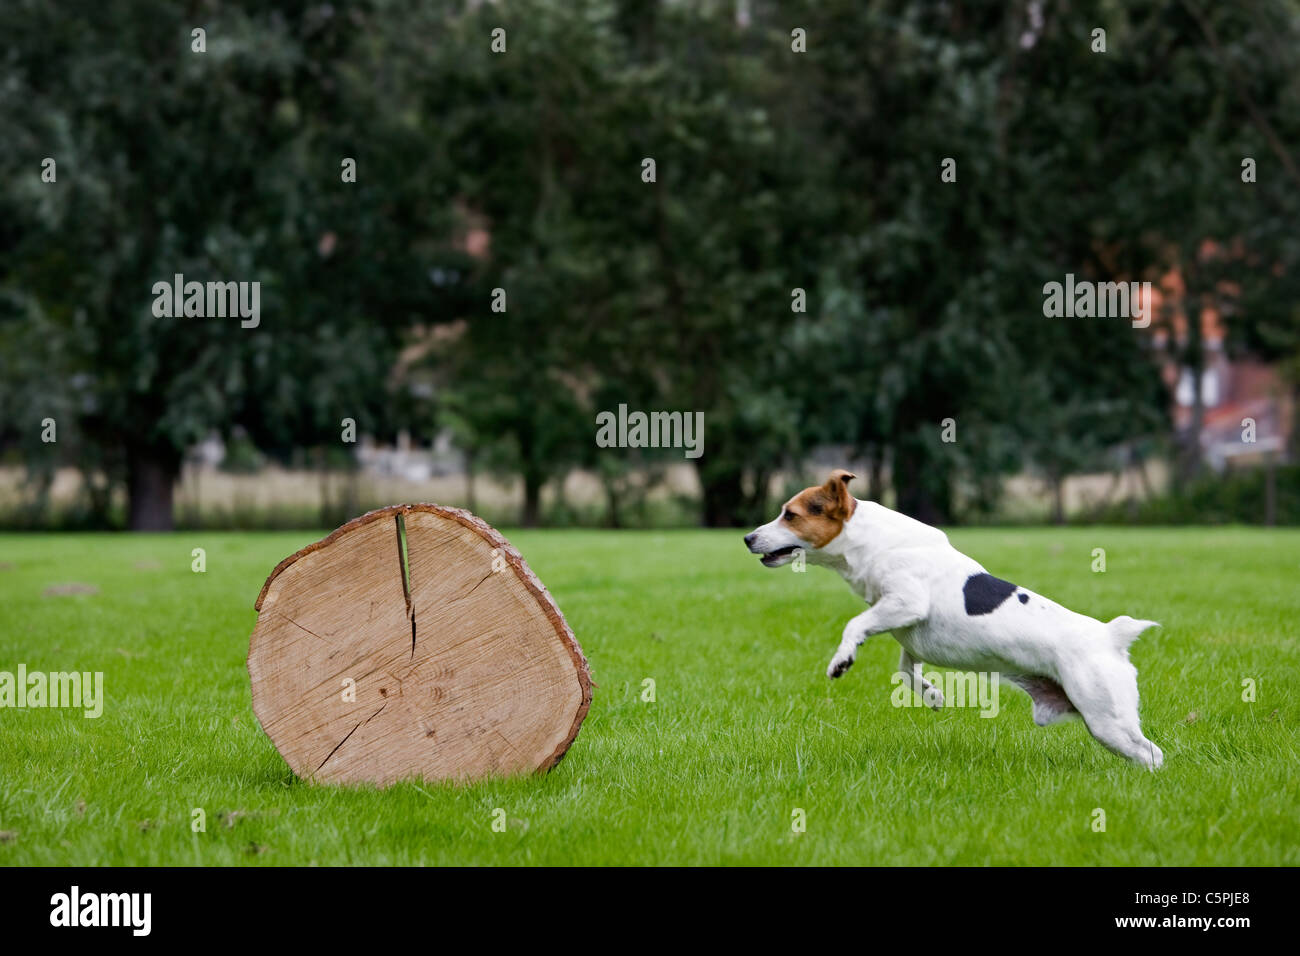 Enduit lisse Jack Russell Terrier (Canis lupus familiaris) courir et sauter sur tronc d'arbre Banque D'Images